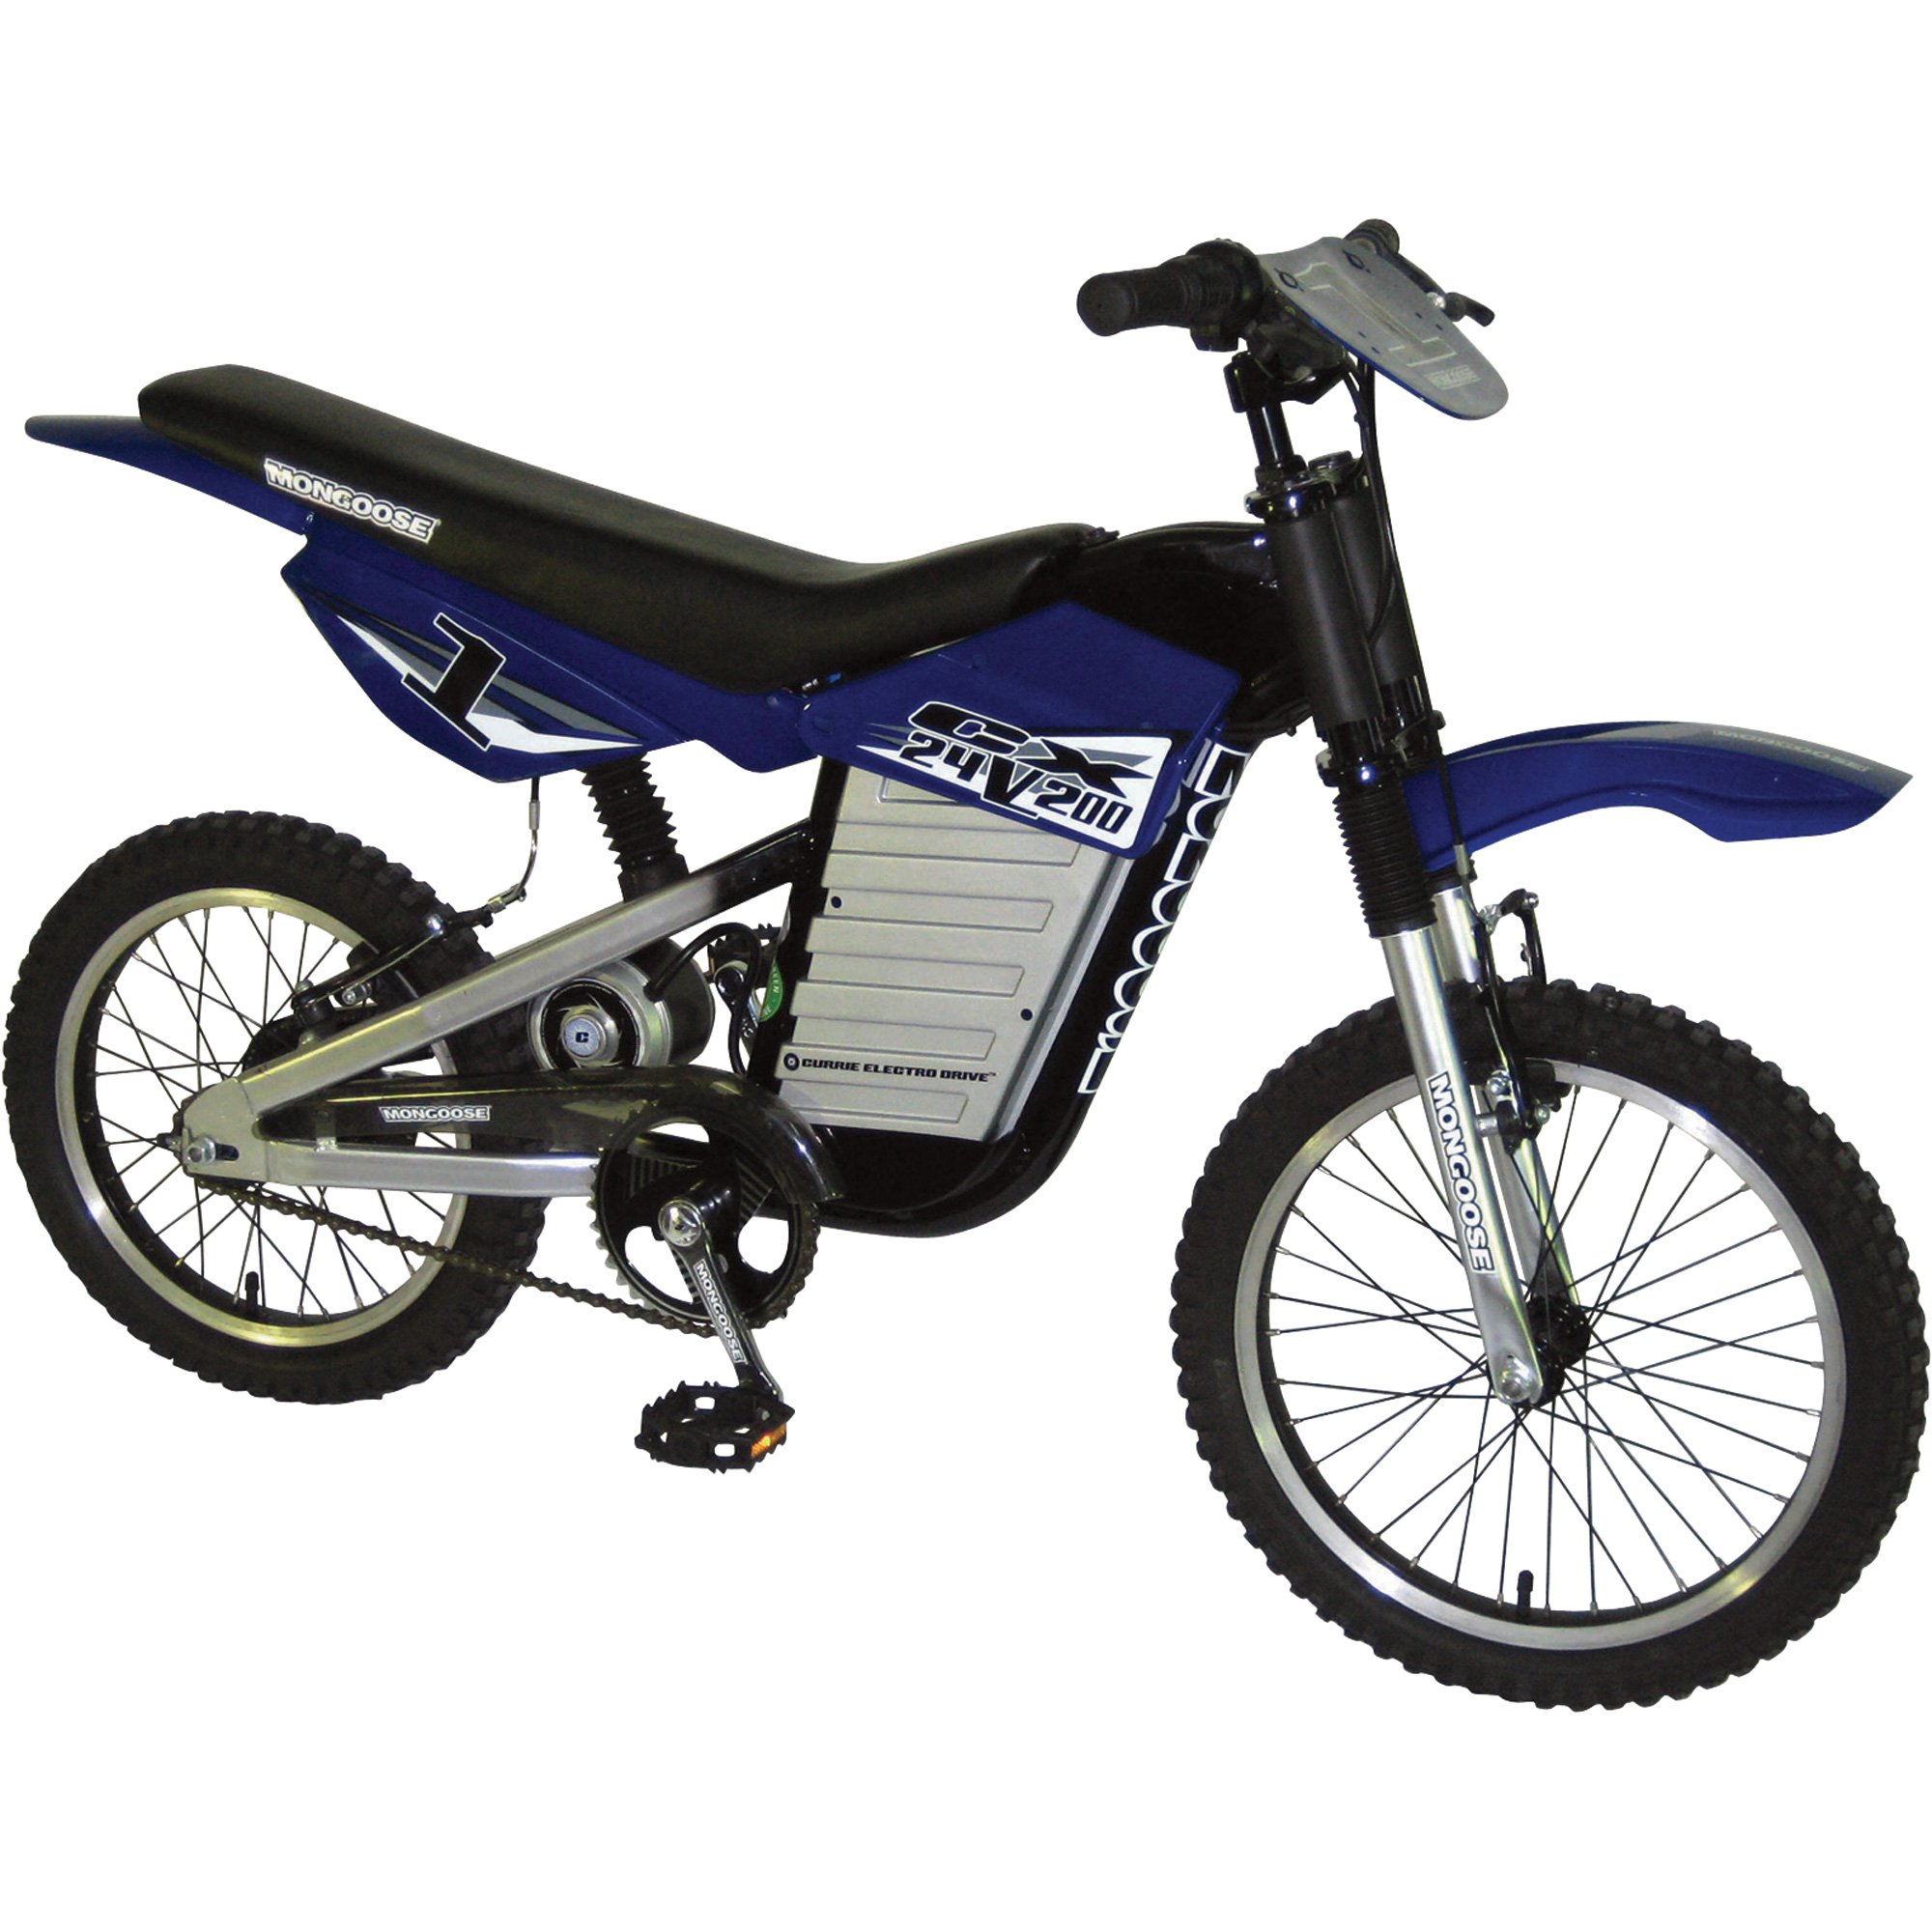 Mongoose 200 Watt Electric Motocross Bike, Model# CX 24v200